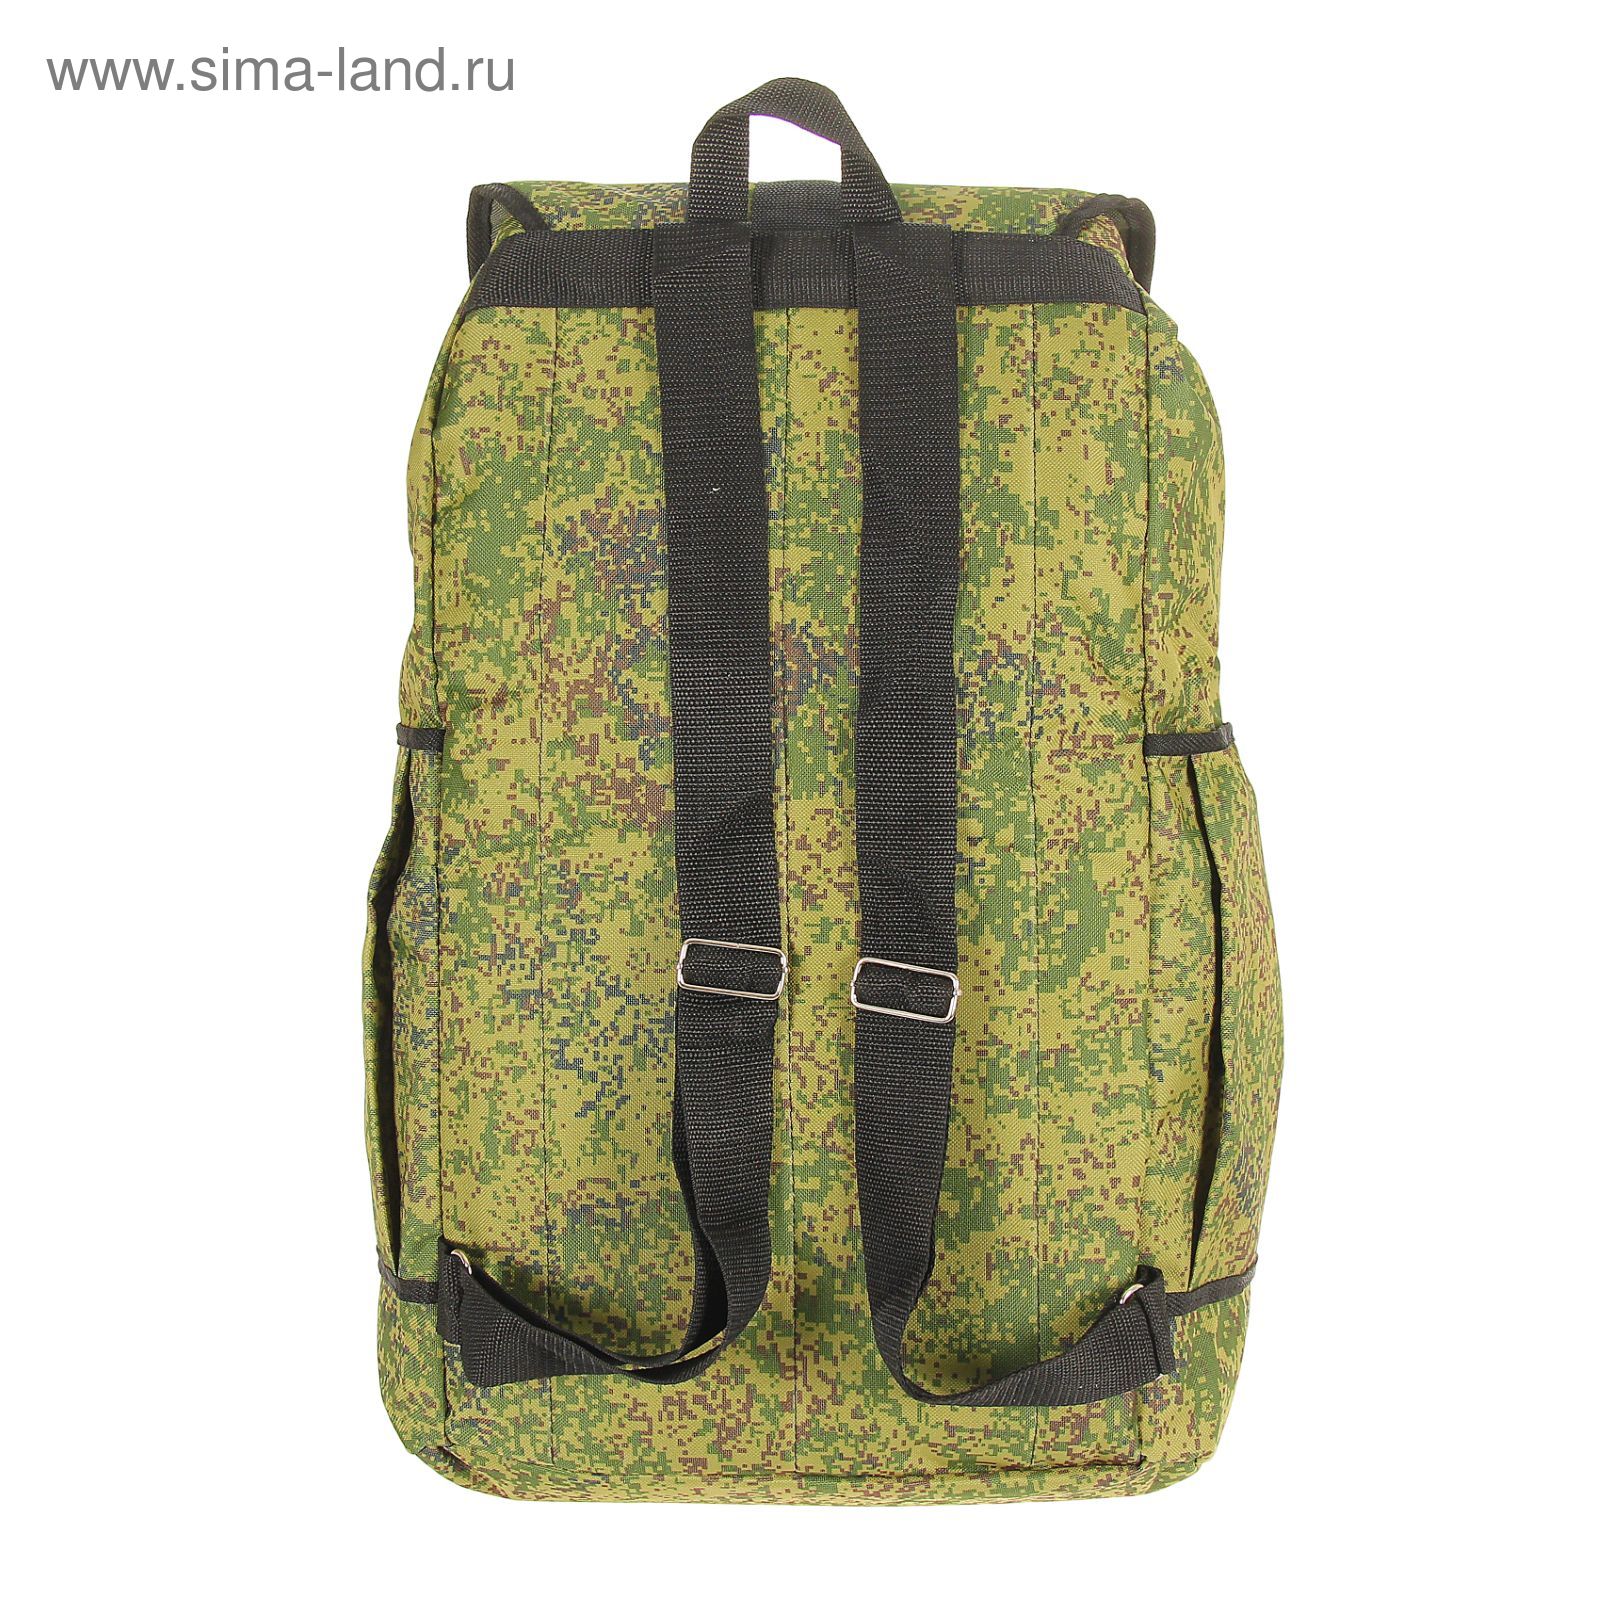 Рюкзак туристический "Камуфляж", 1 отдел, 3 наружных кармана, объём - 55л, цвет хаки